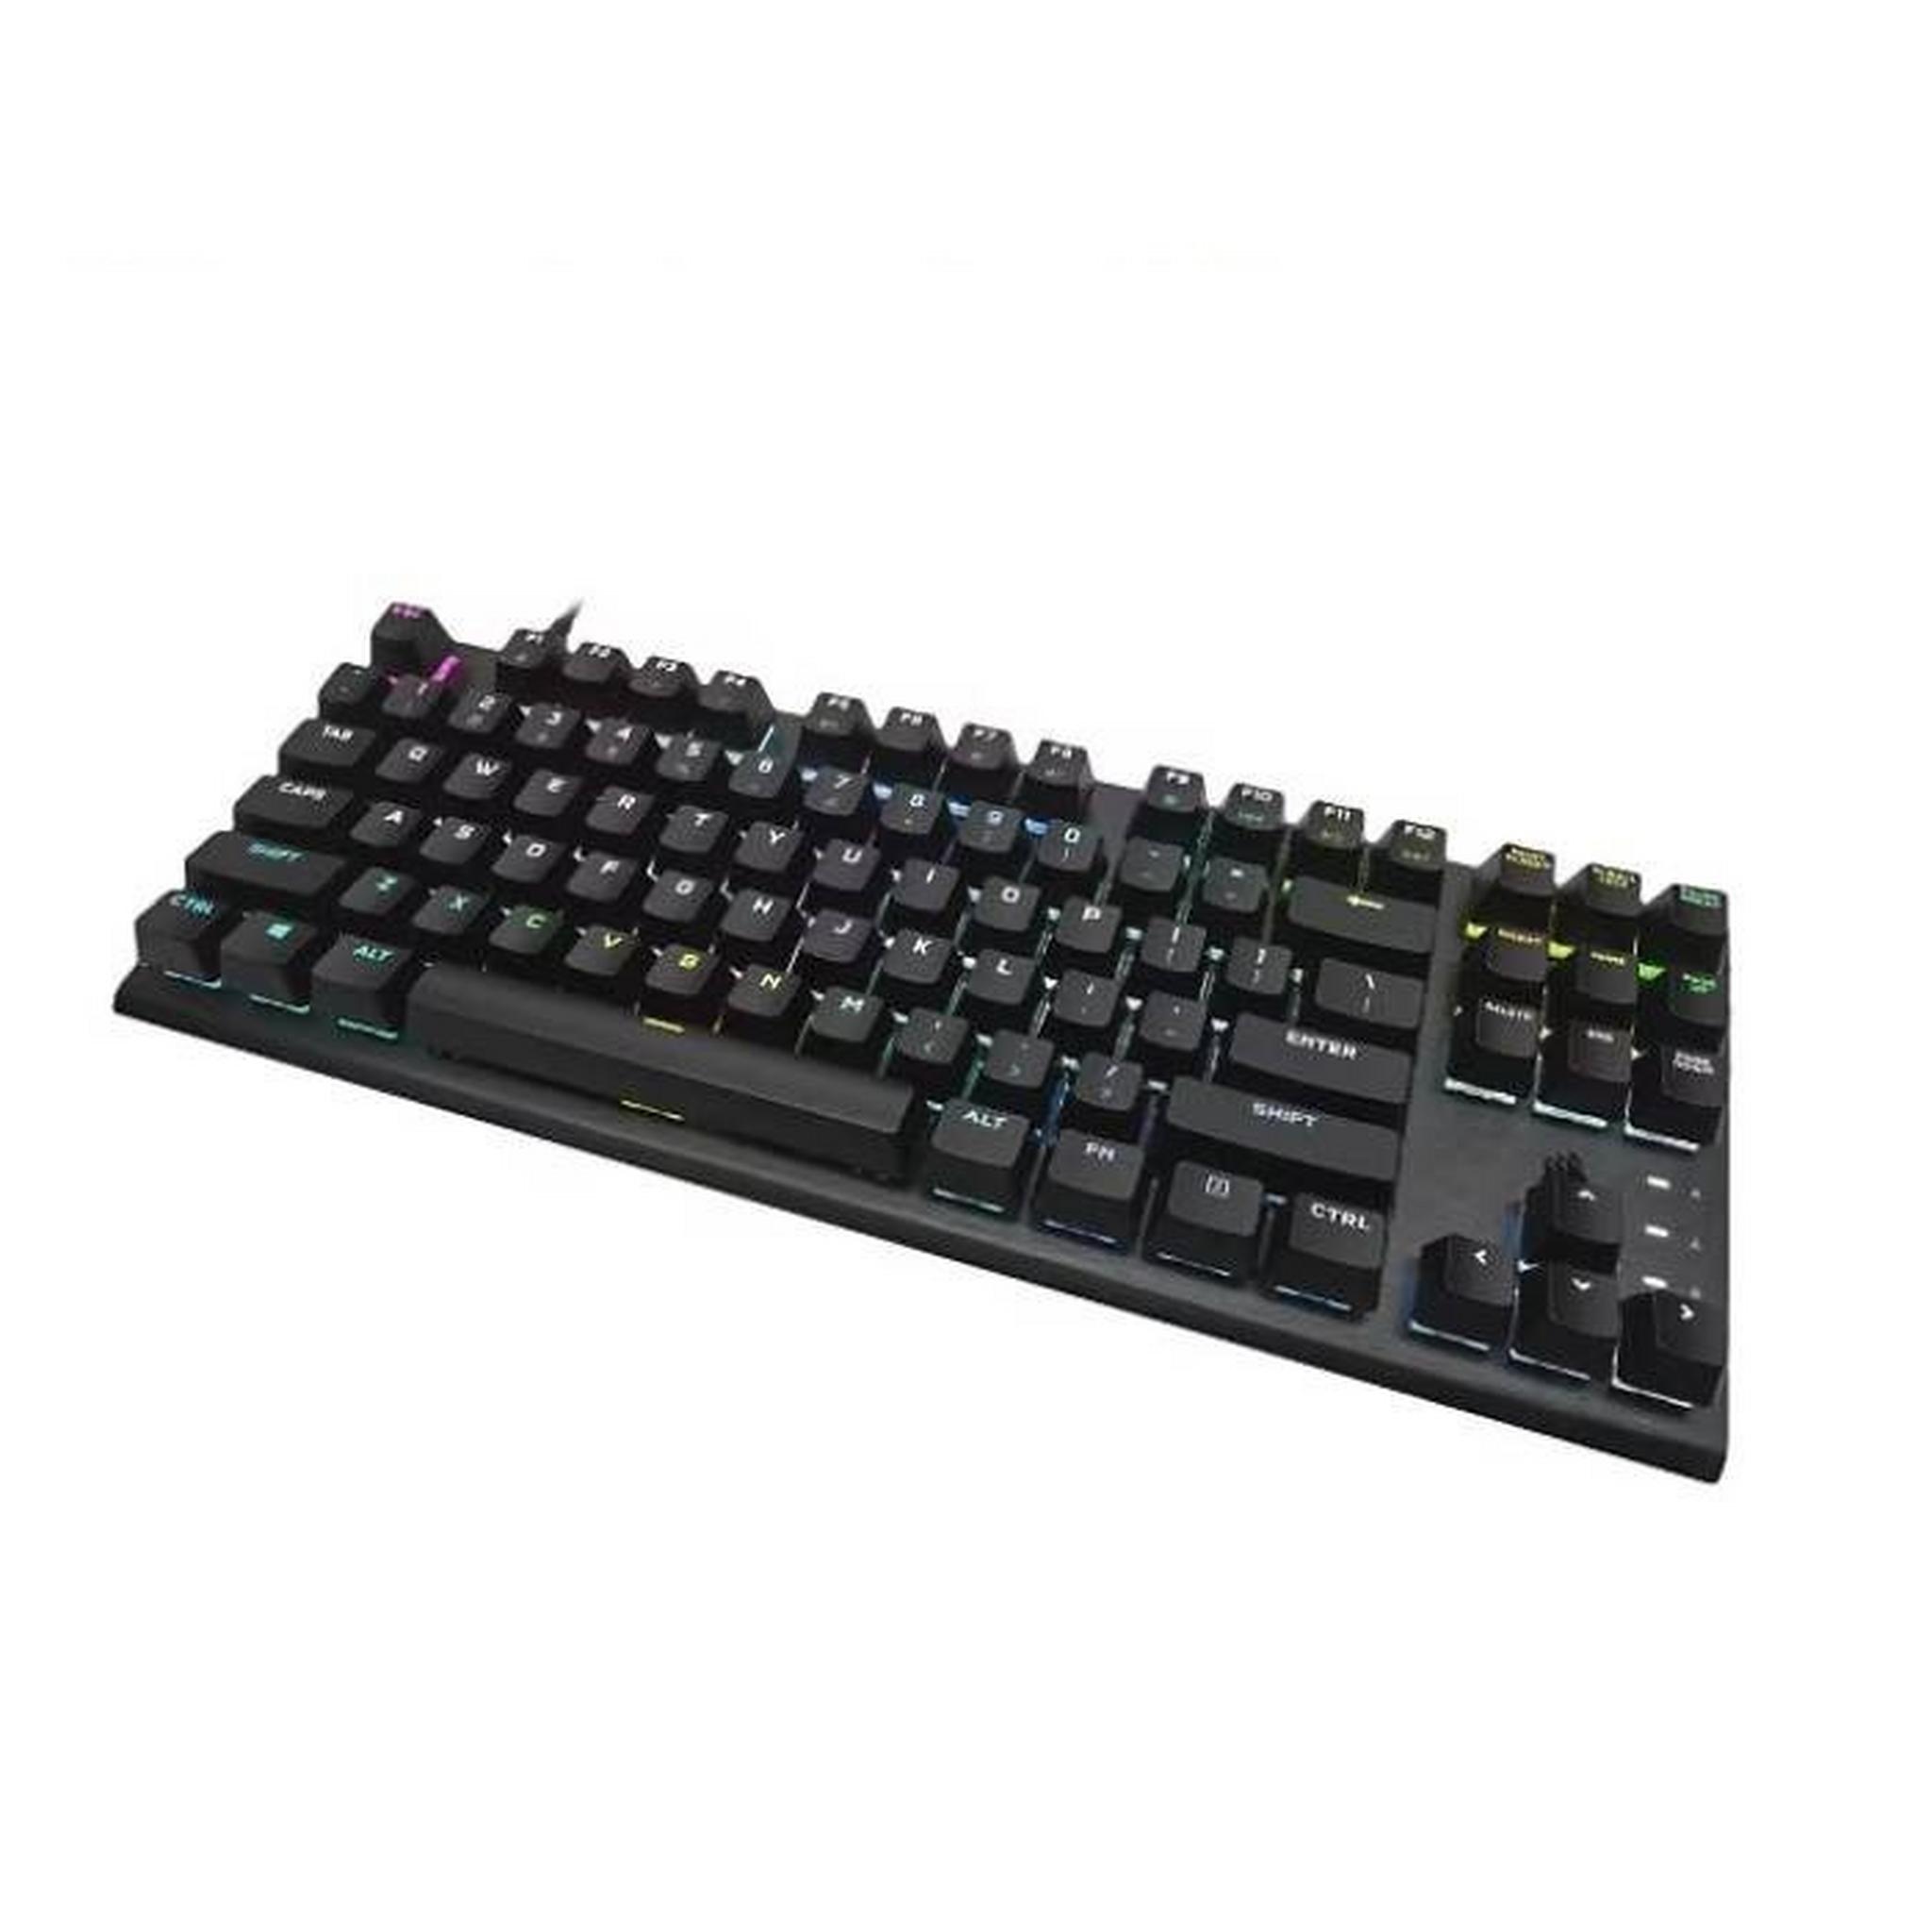 Corsair K60 Pro TKL RGB Mechanical Gaming Keyboard – Black